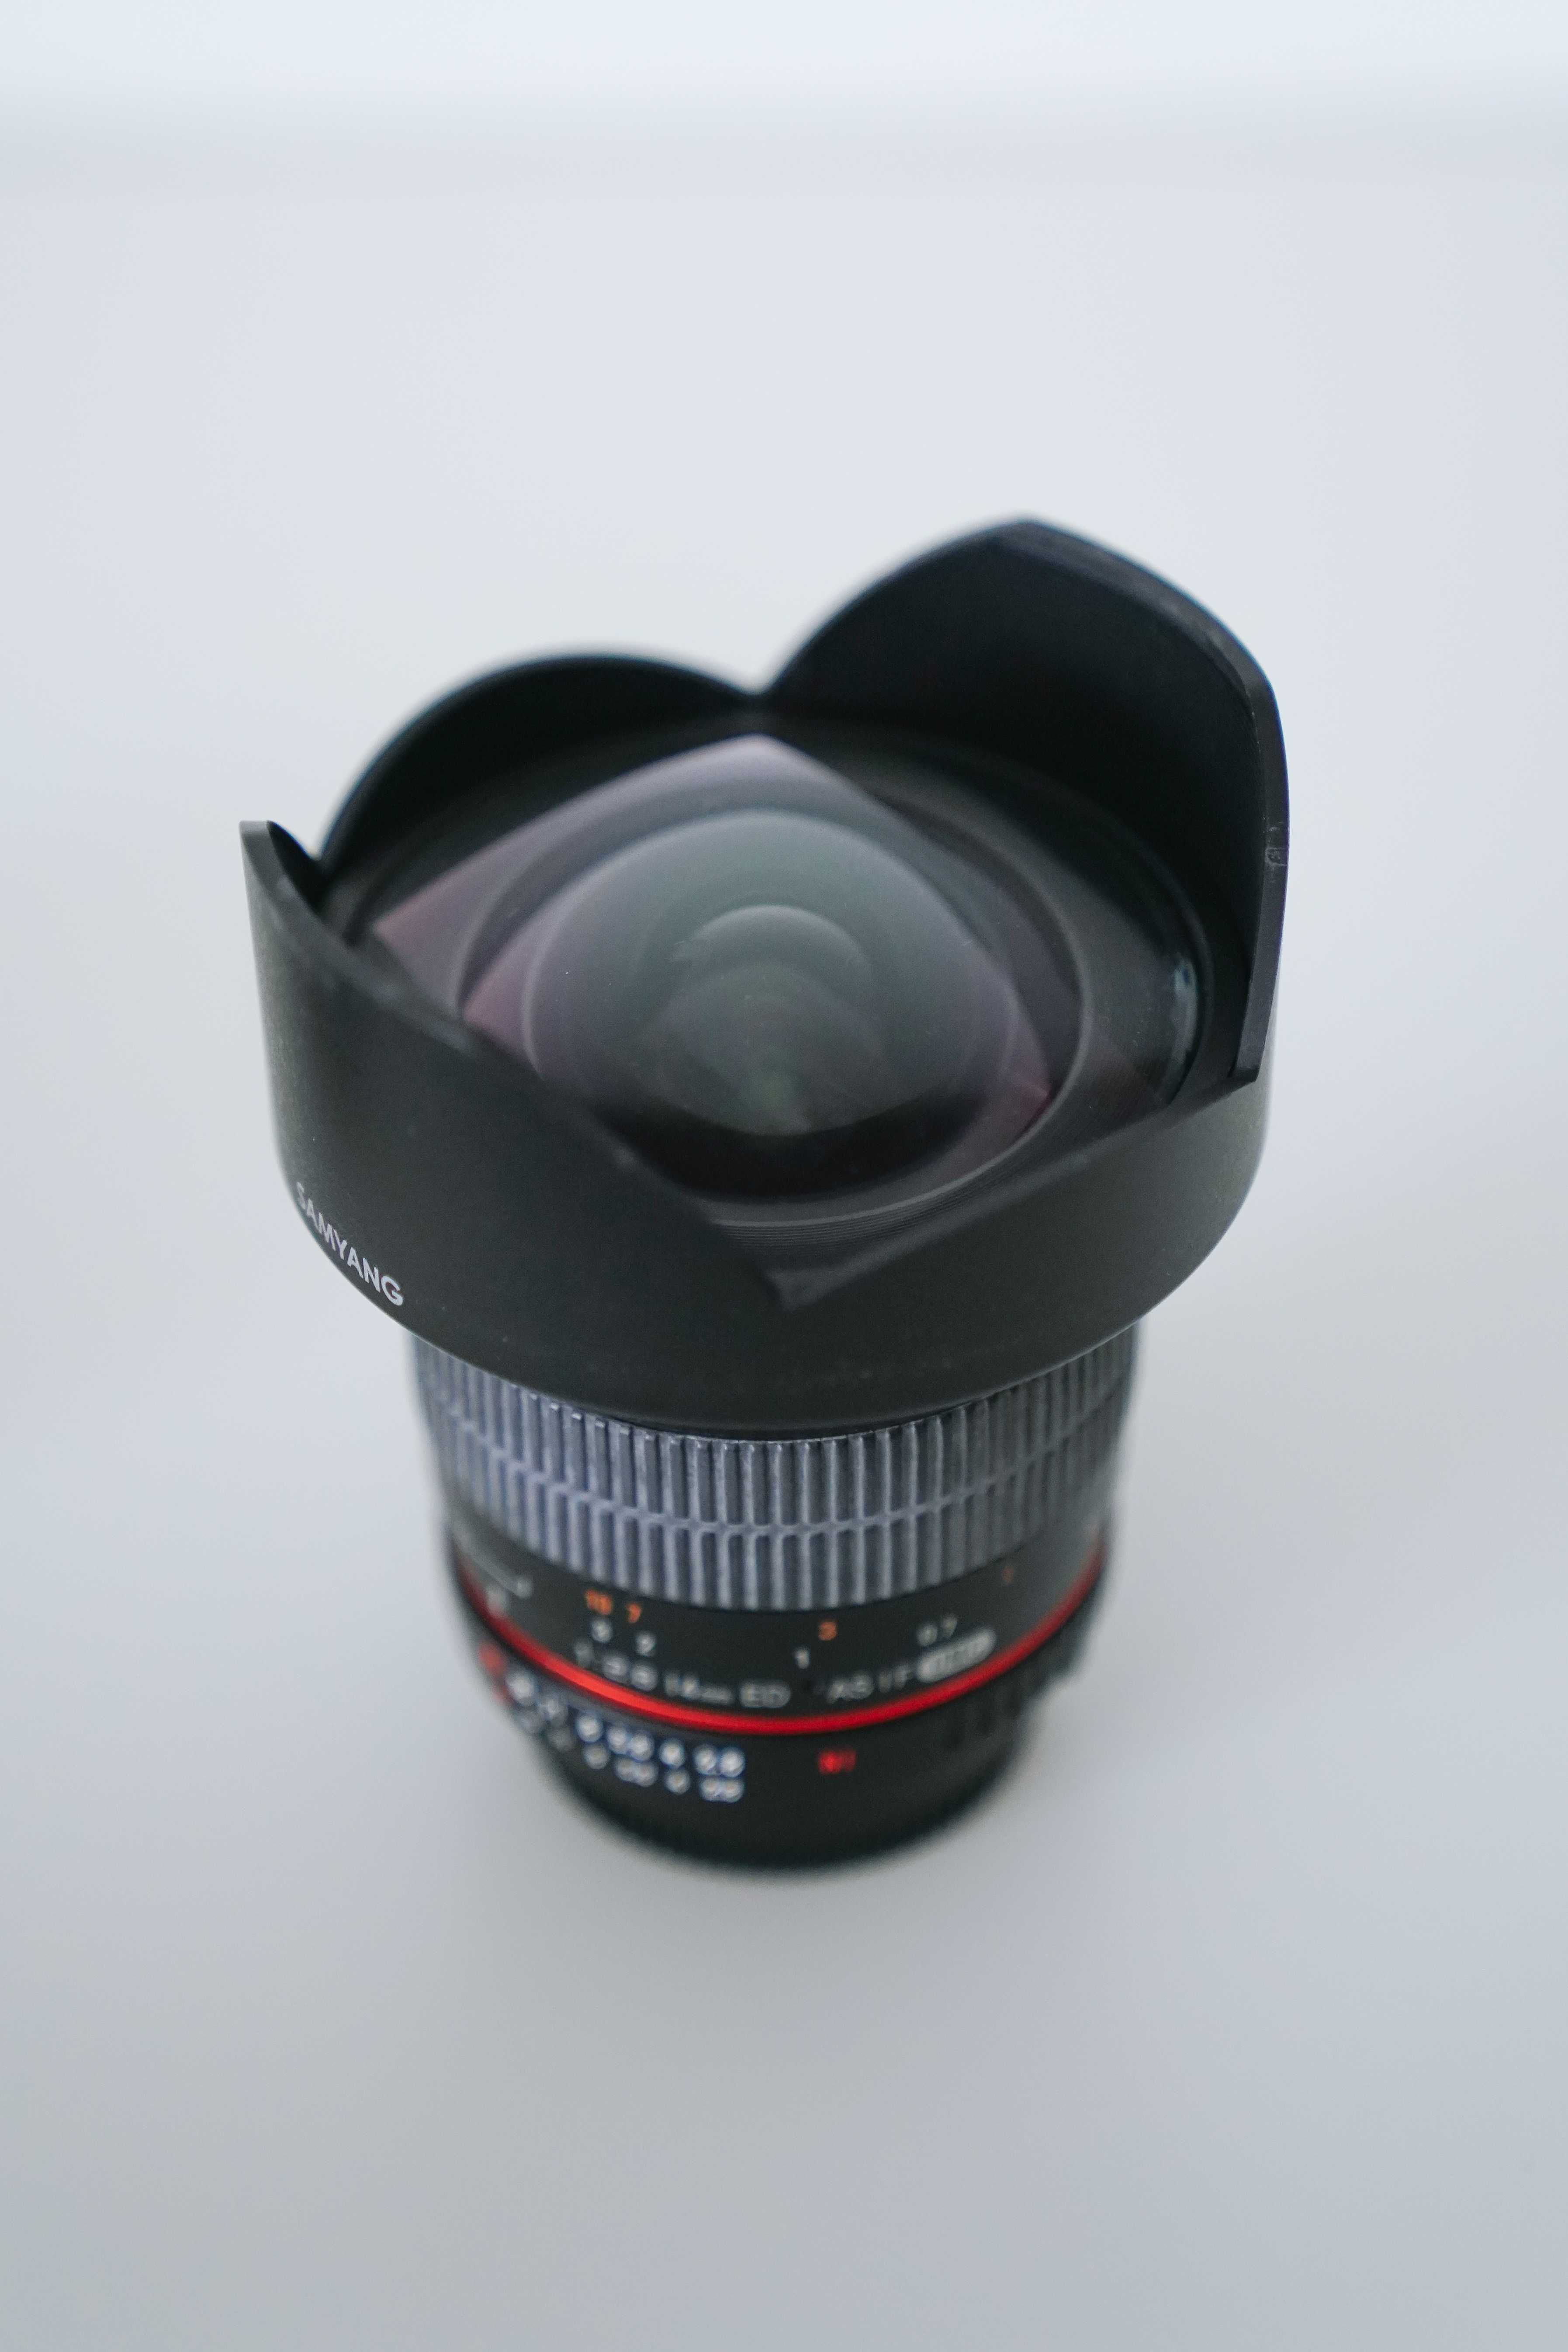 Samyang 14mm f/2.8 IF ED UMC | Nikon